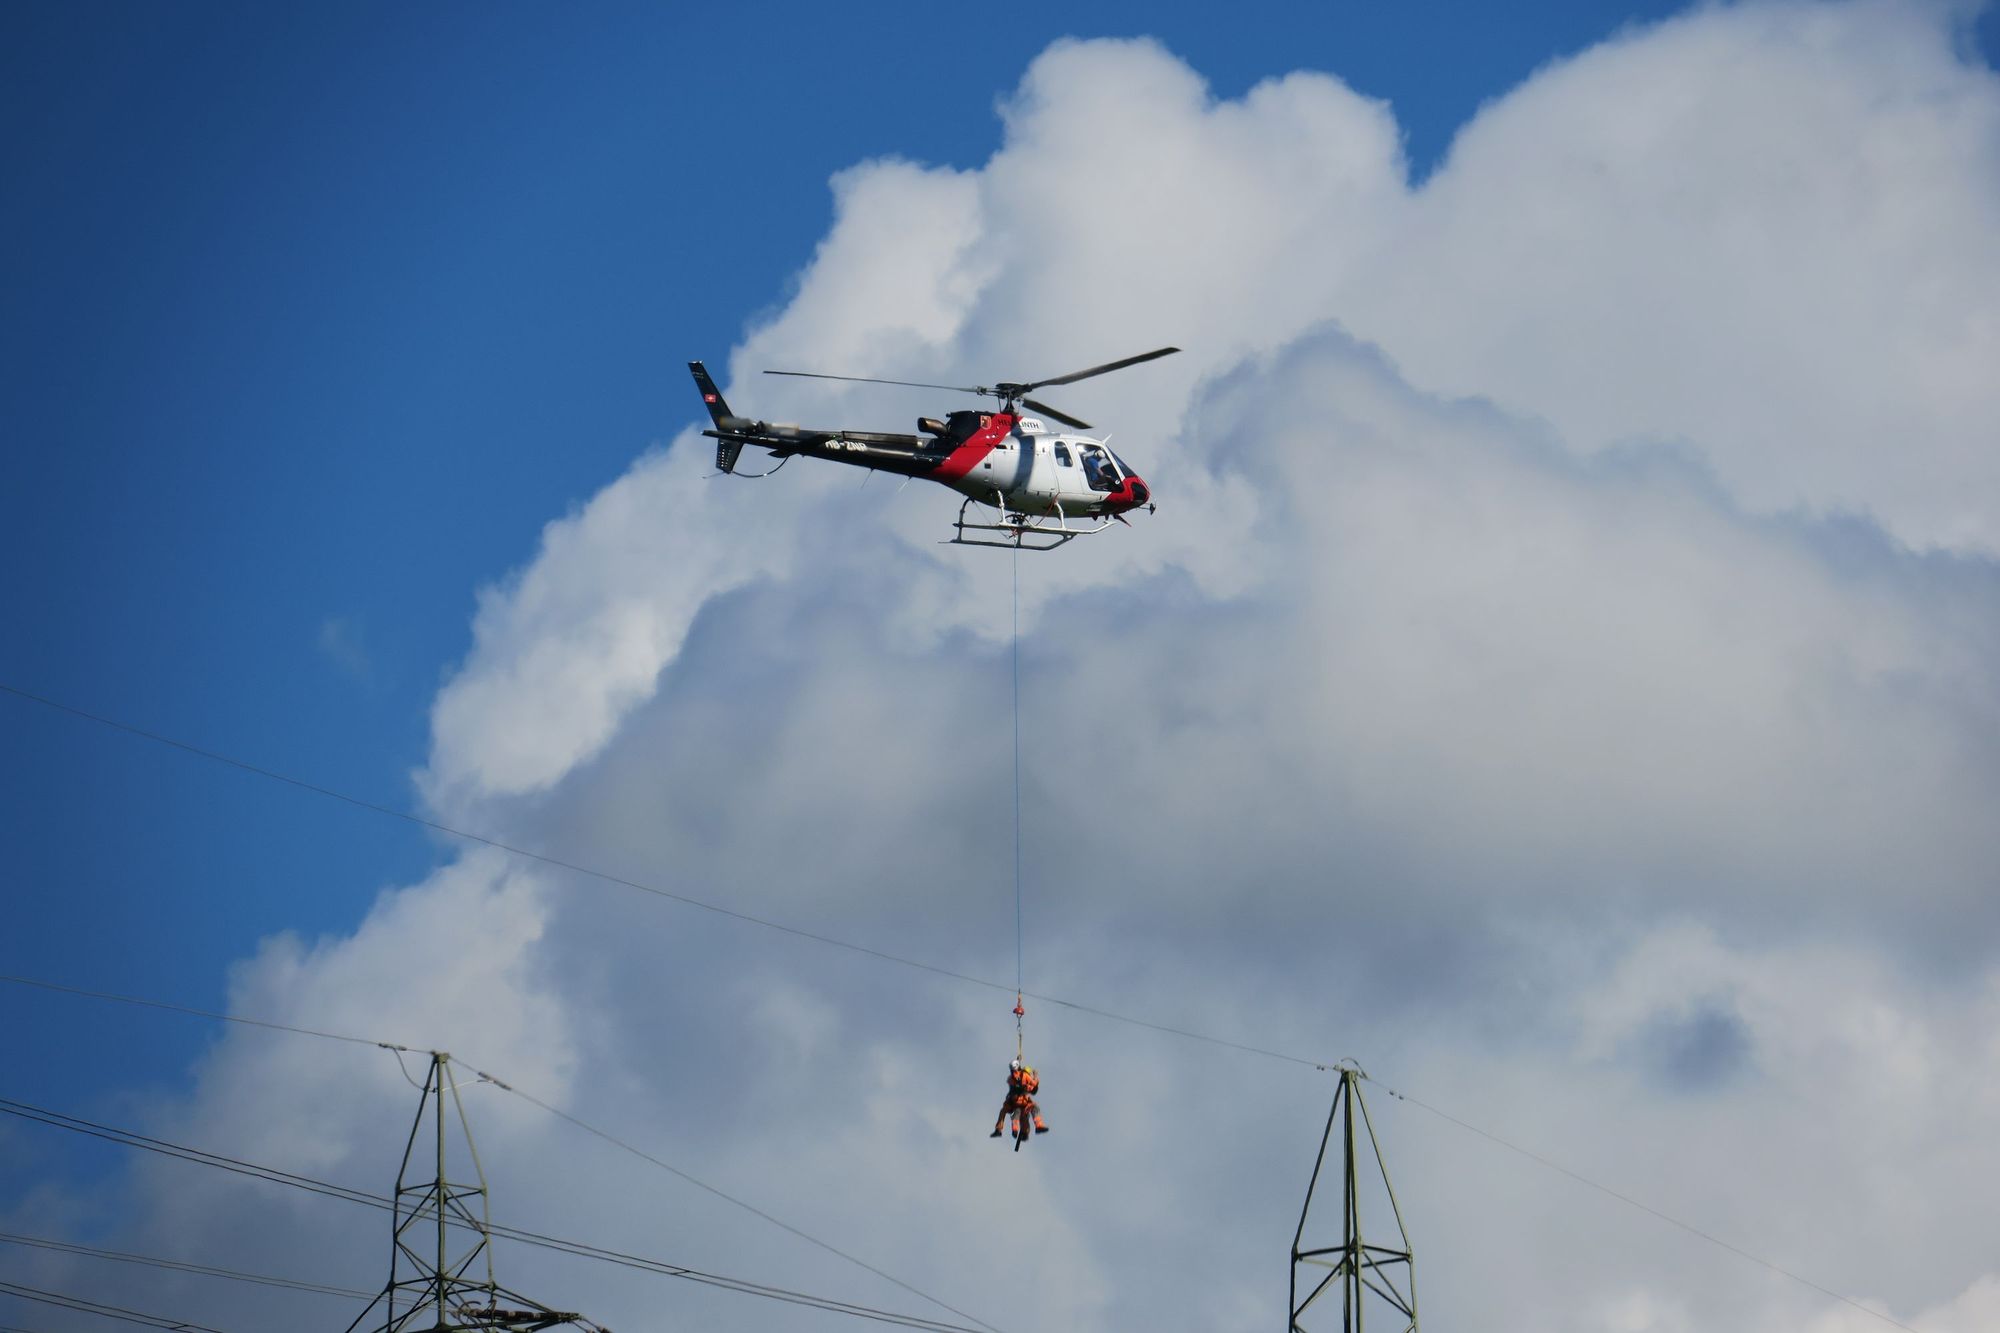 Helikopter bringt 2 Personen zu einer Freileitung am 28. September 2020 in Schmerikon (Foto: Thomas Müller, 8716.ch)